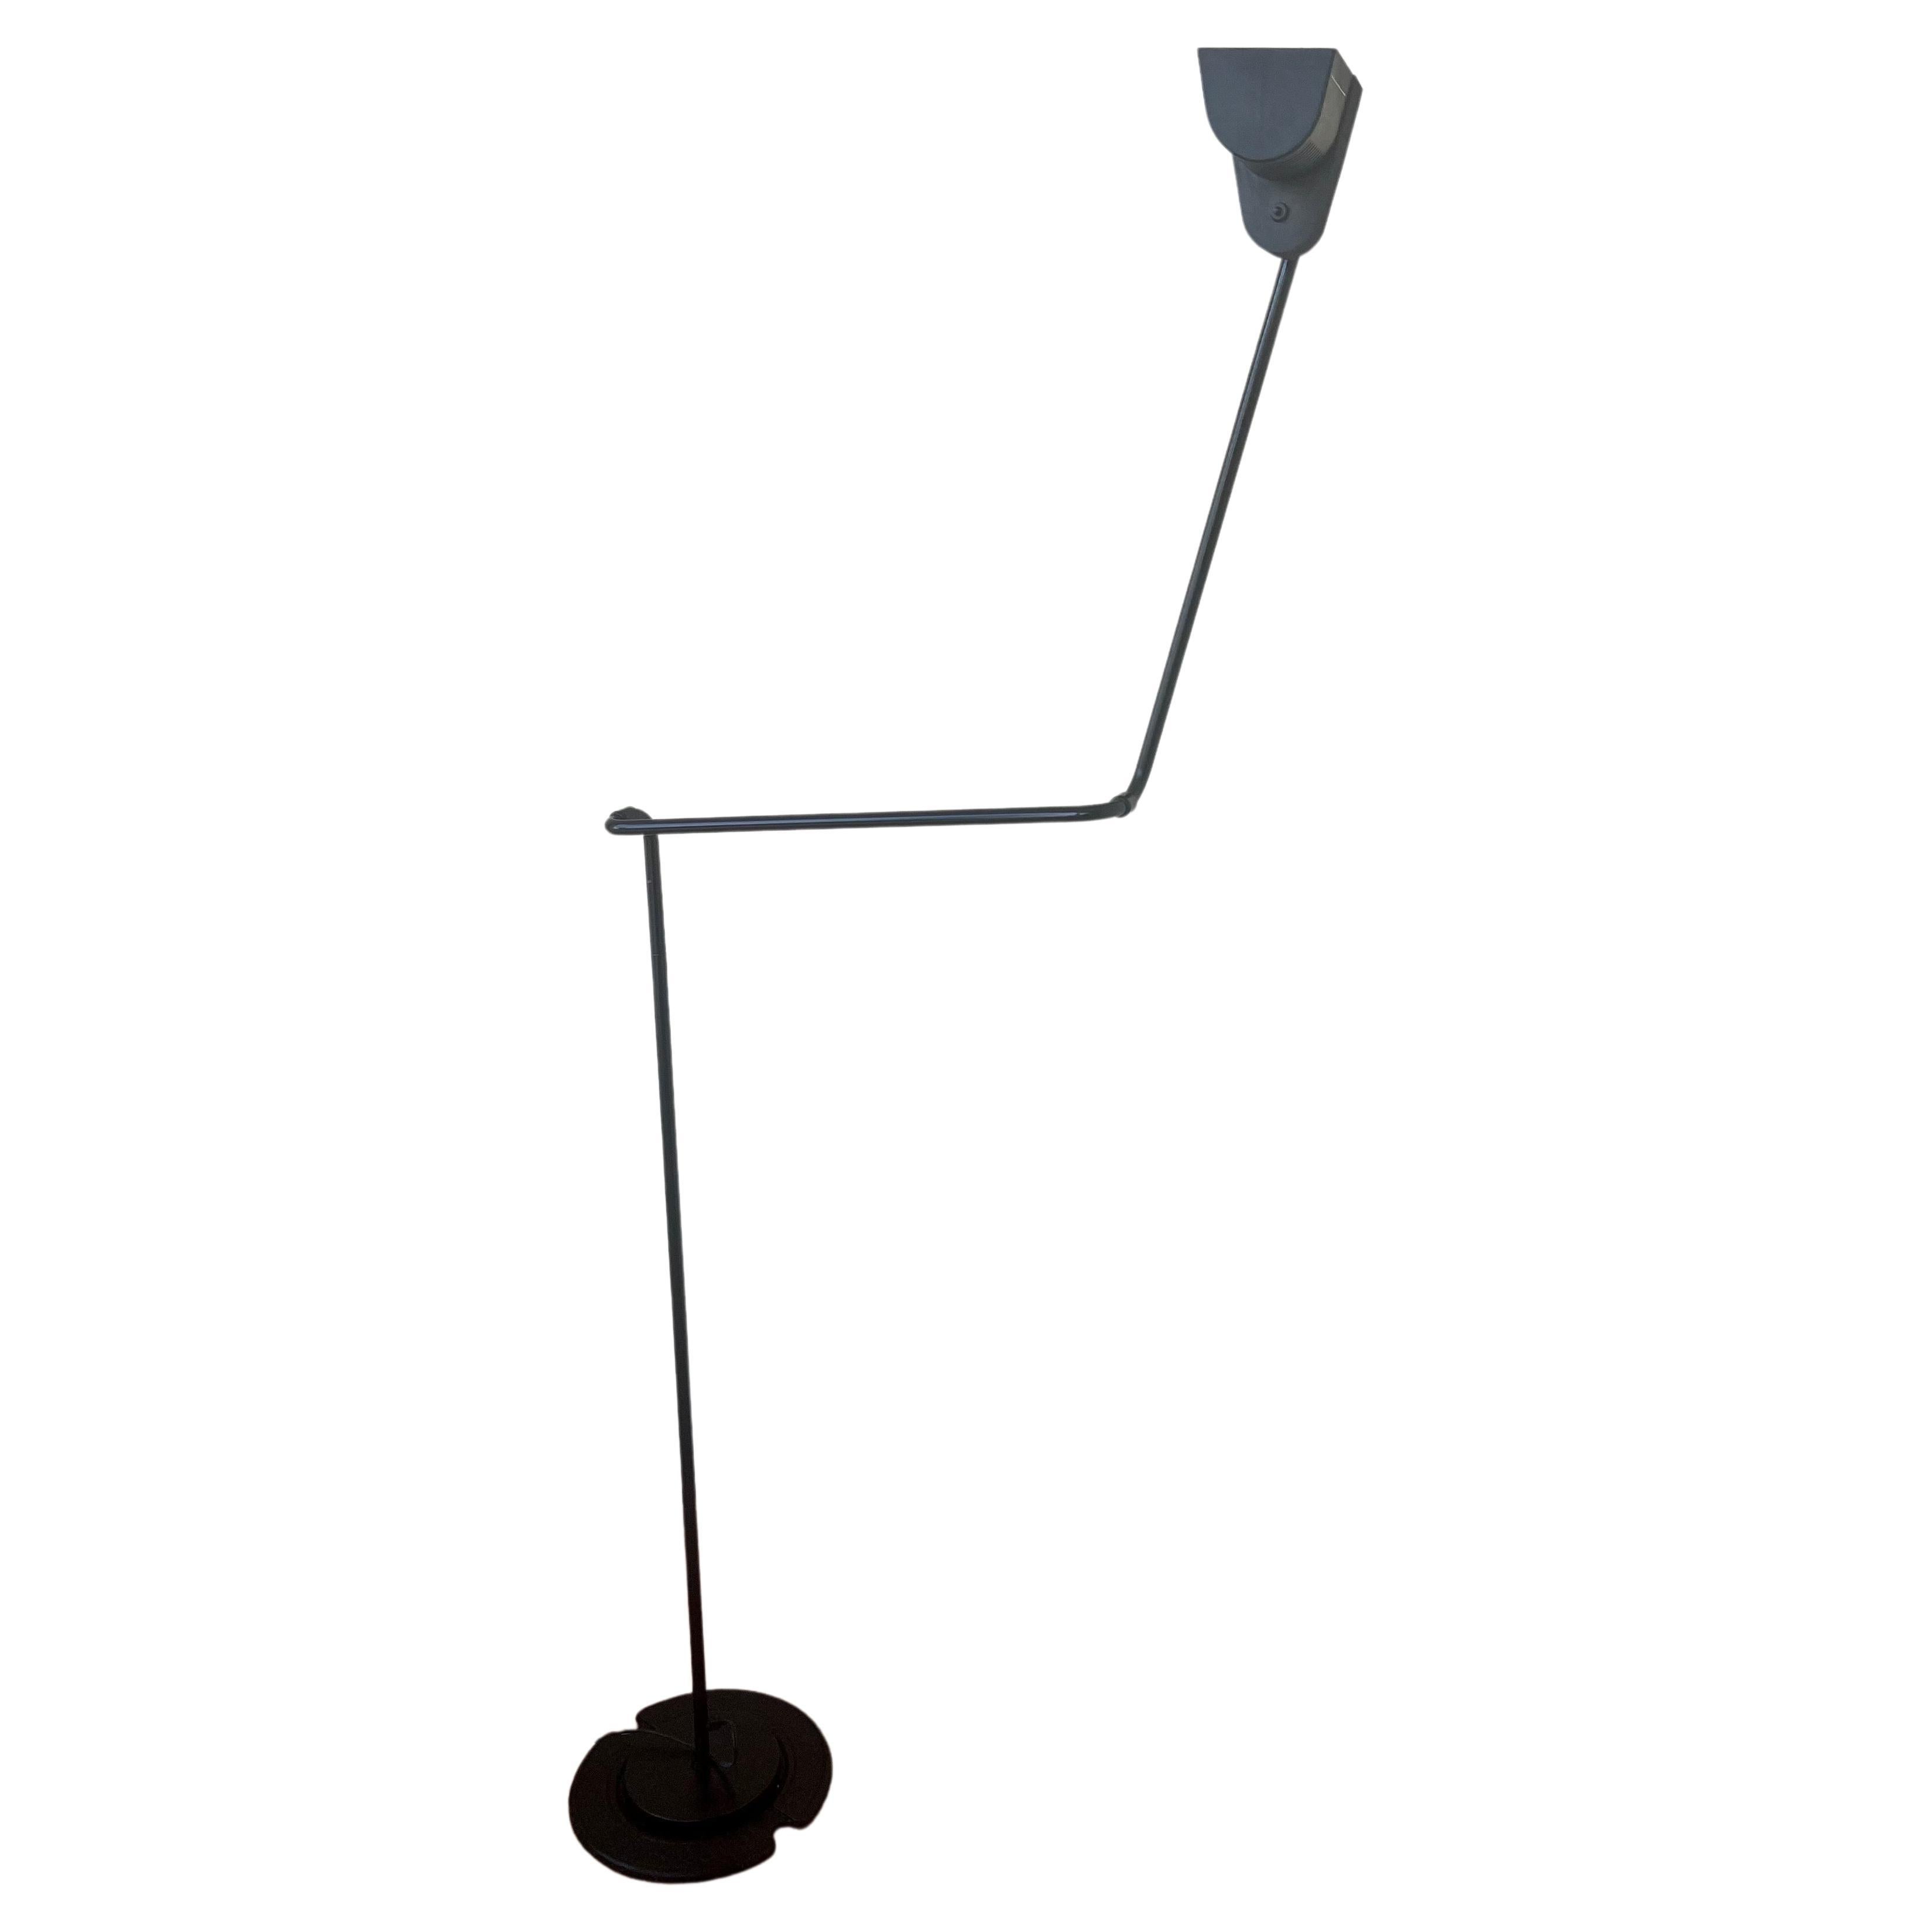 Japanese Rare Multidirectional Floor Clip Lamp by Hannes Wettstein for Belux For Sale